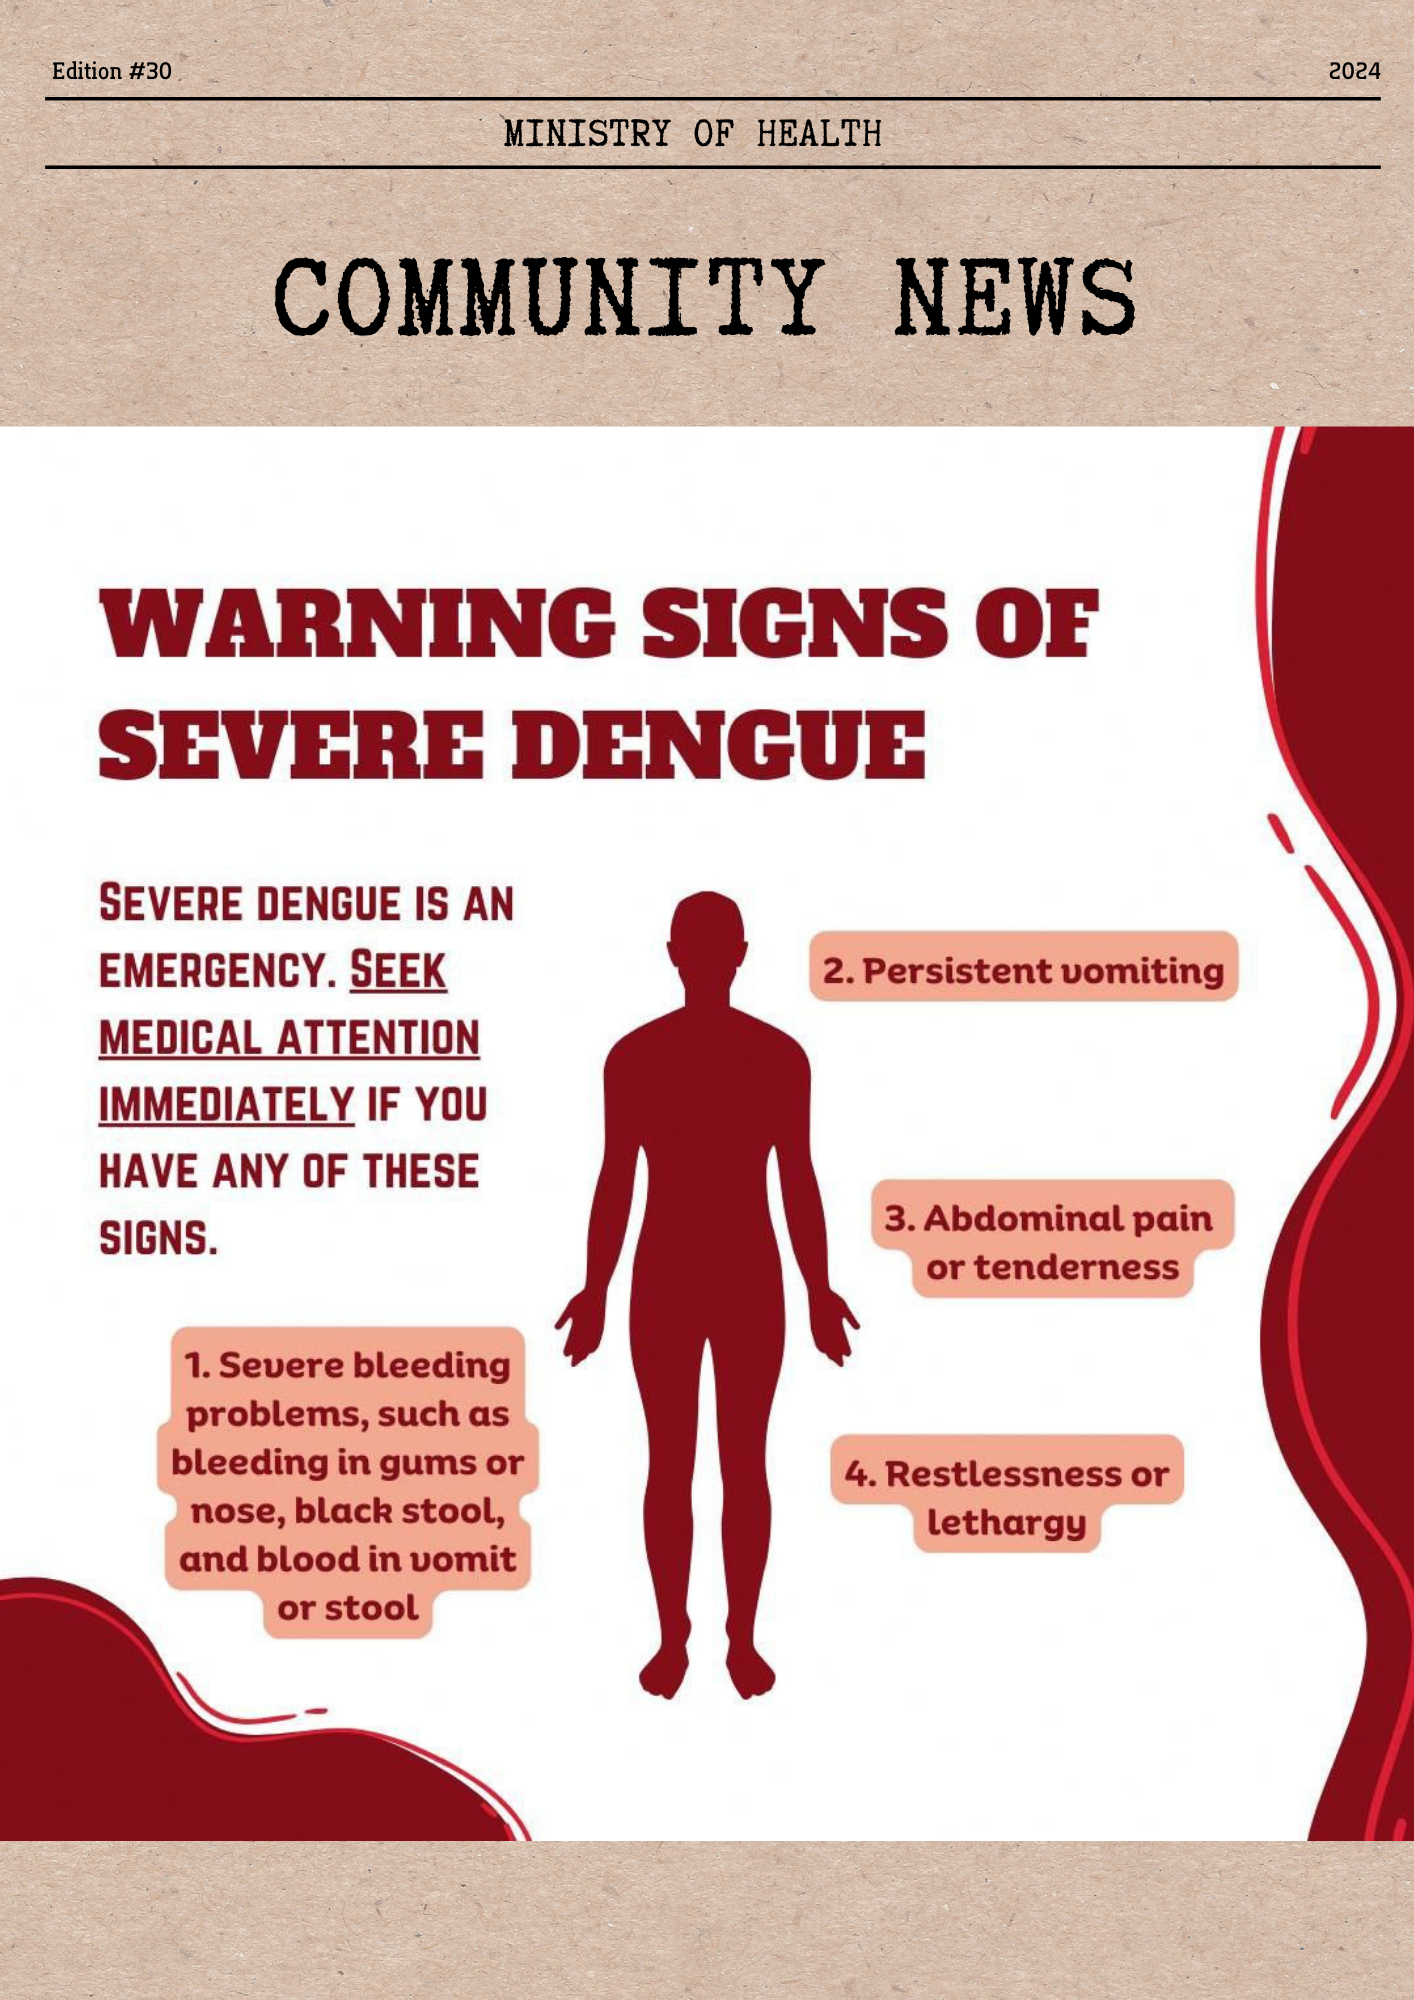 dengue warning signs